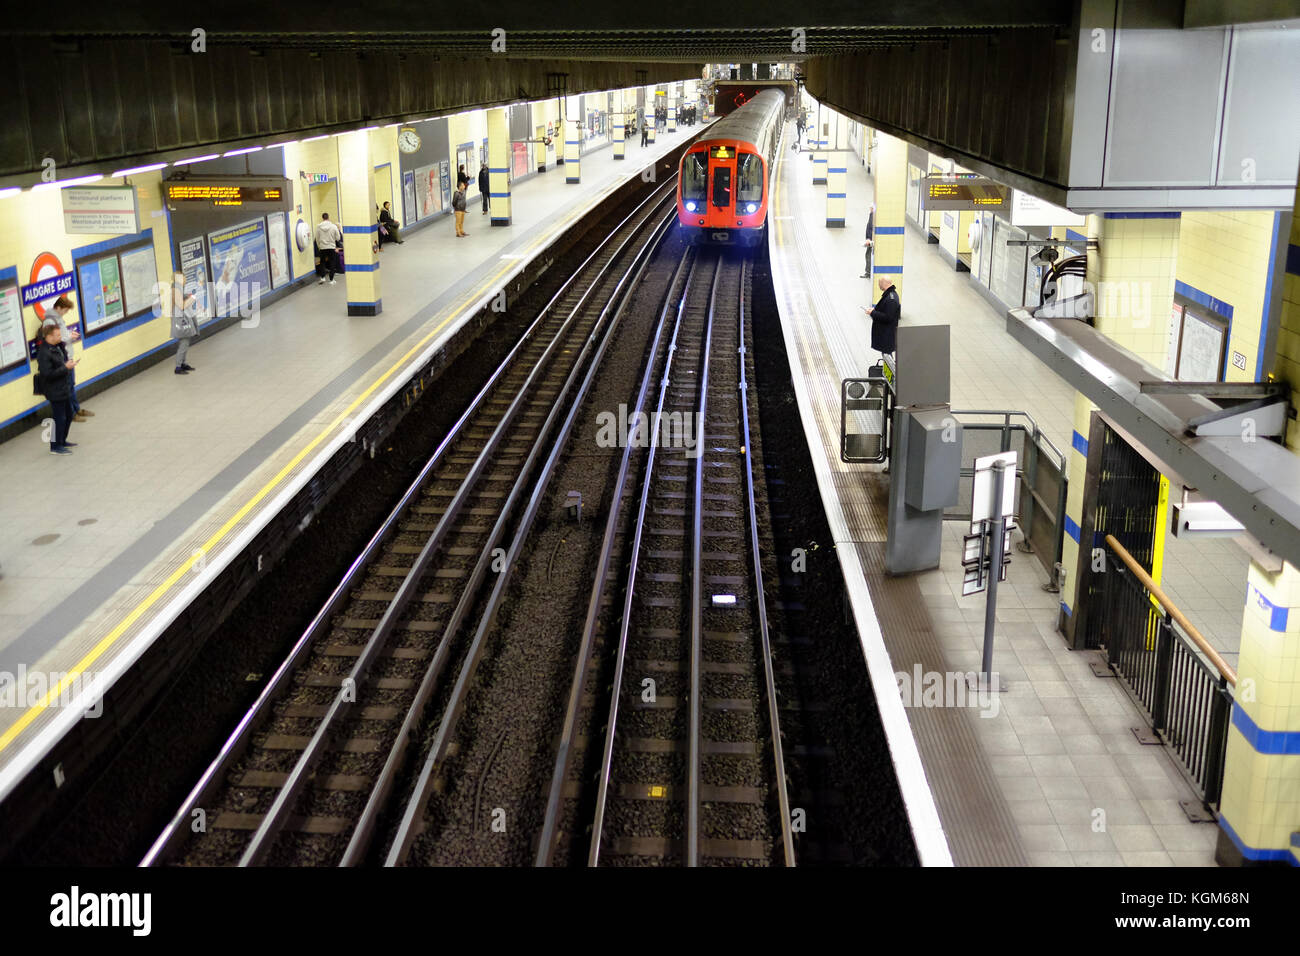 Une rame de métro à la plate-forme de la station Aldgate East sur le système de métro de Londres avec les usagers en attente Banque D'Images